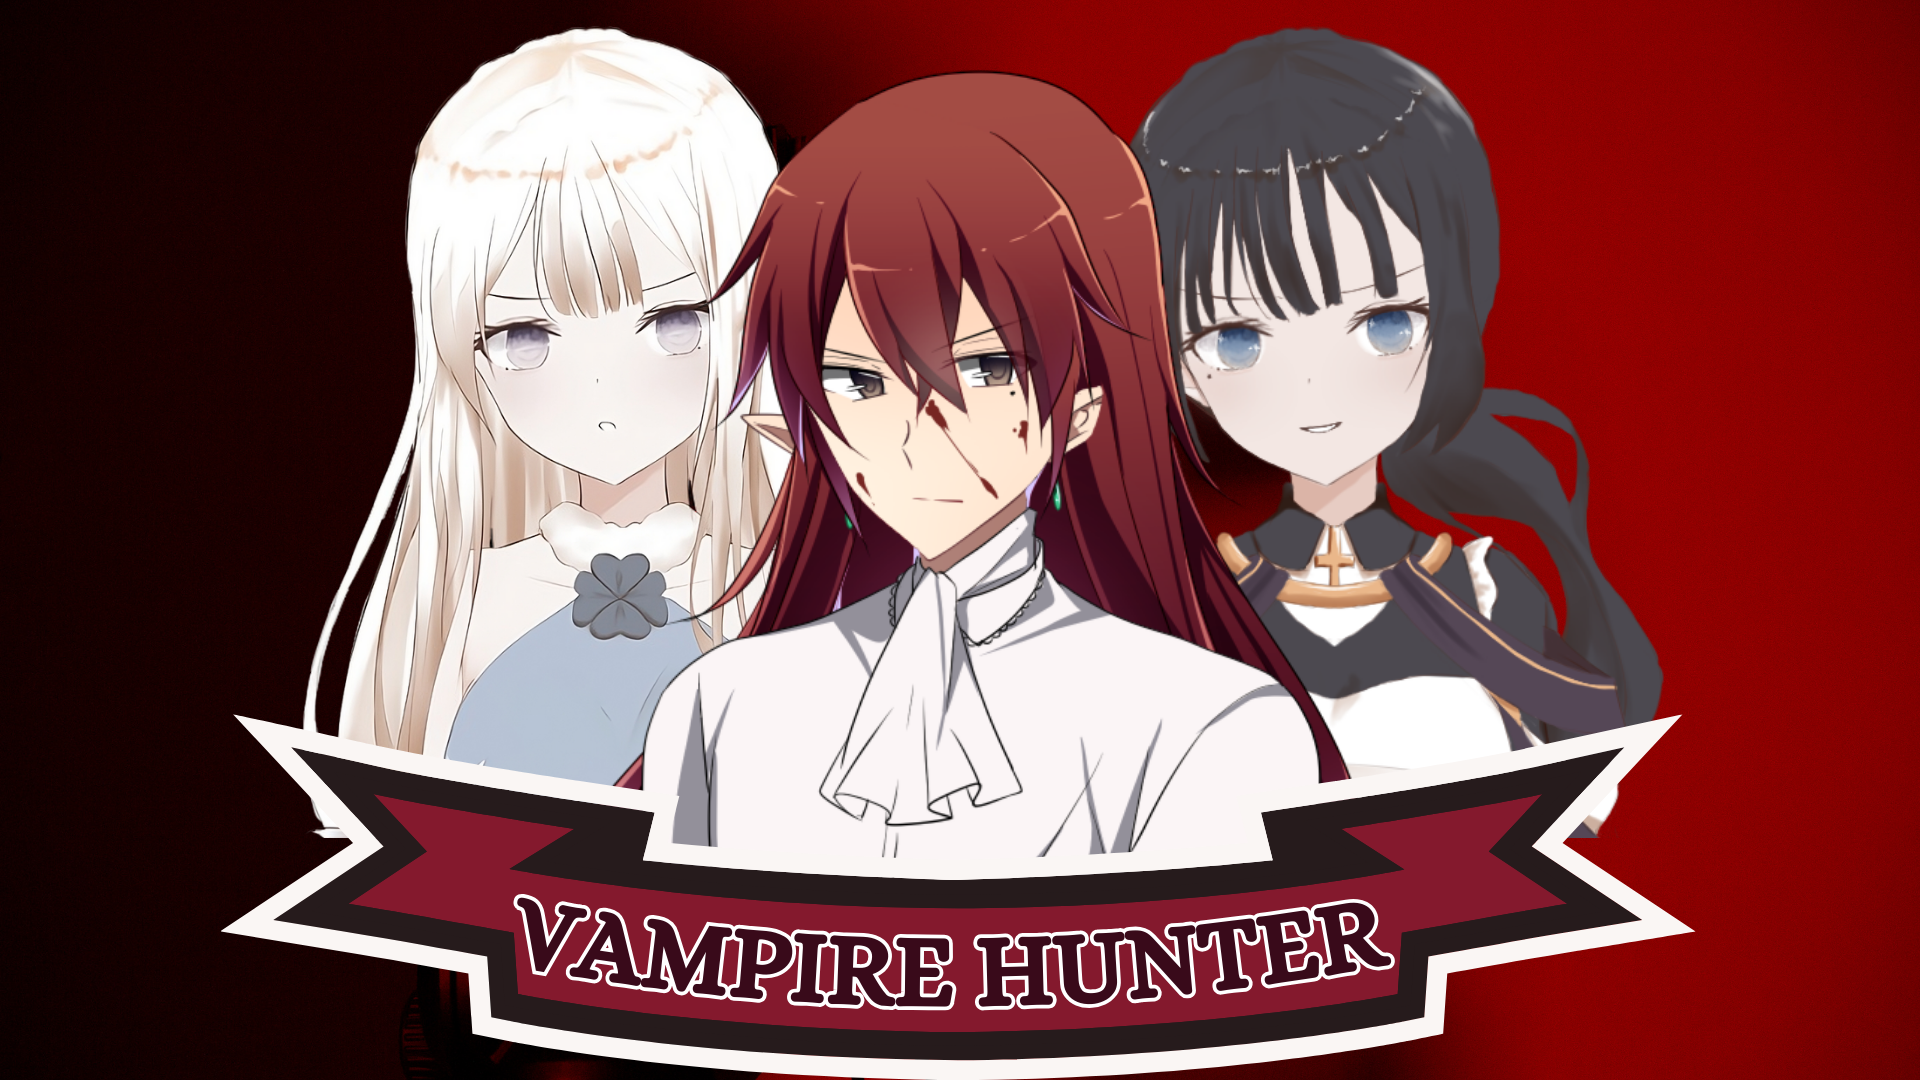 Anime vampire hunter girl  Hd anime wallpapers, Anime, Vampire hunter